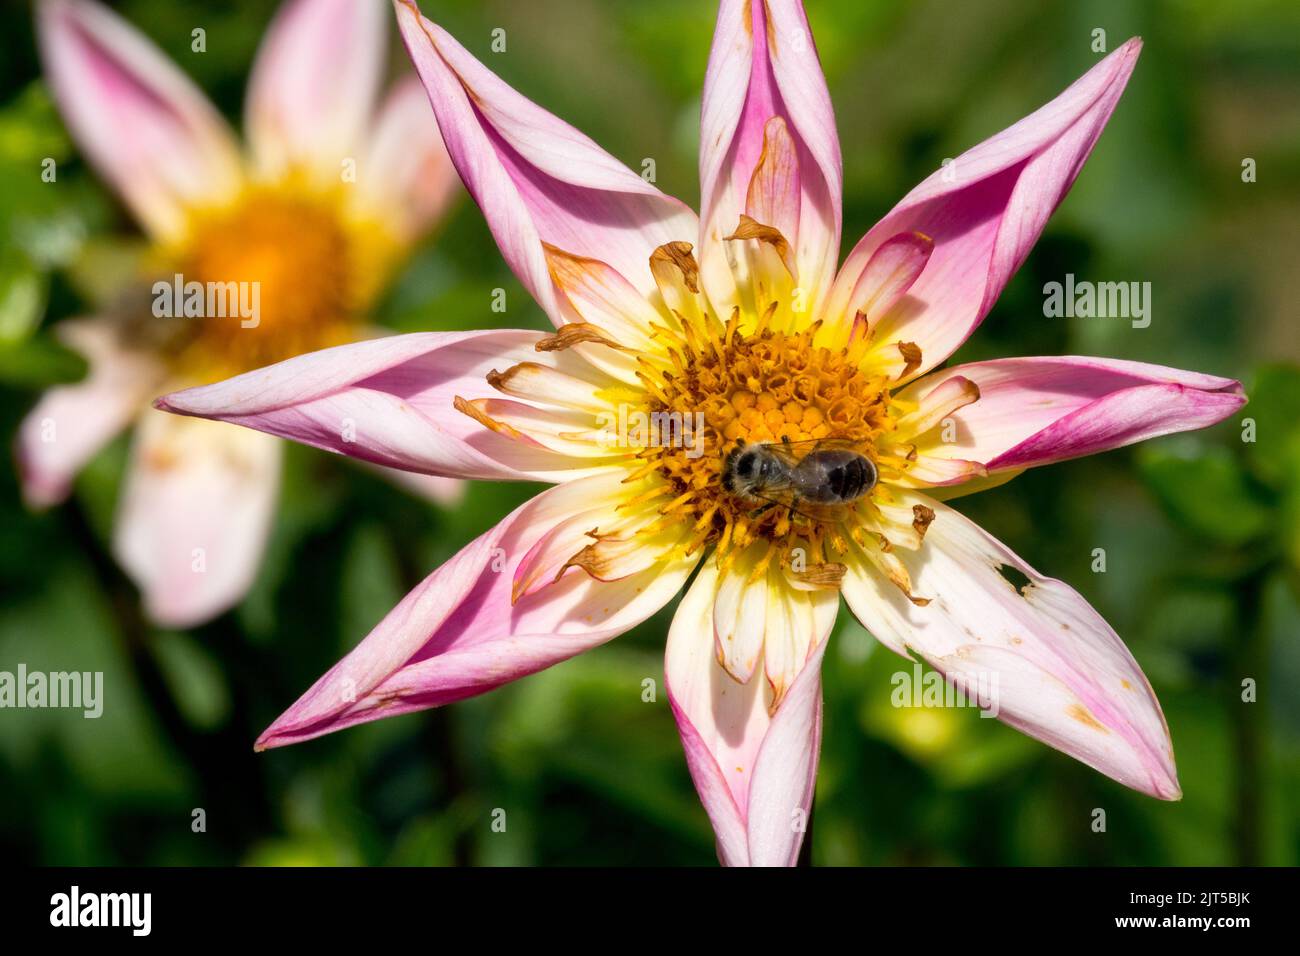 Belleza rosa flor Dahlia 'pantalones fantasía abeja en el centro de flor, cabeza de flor Foto de stock